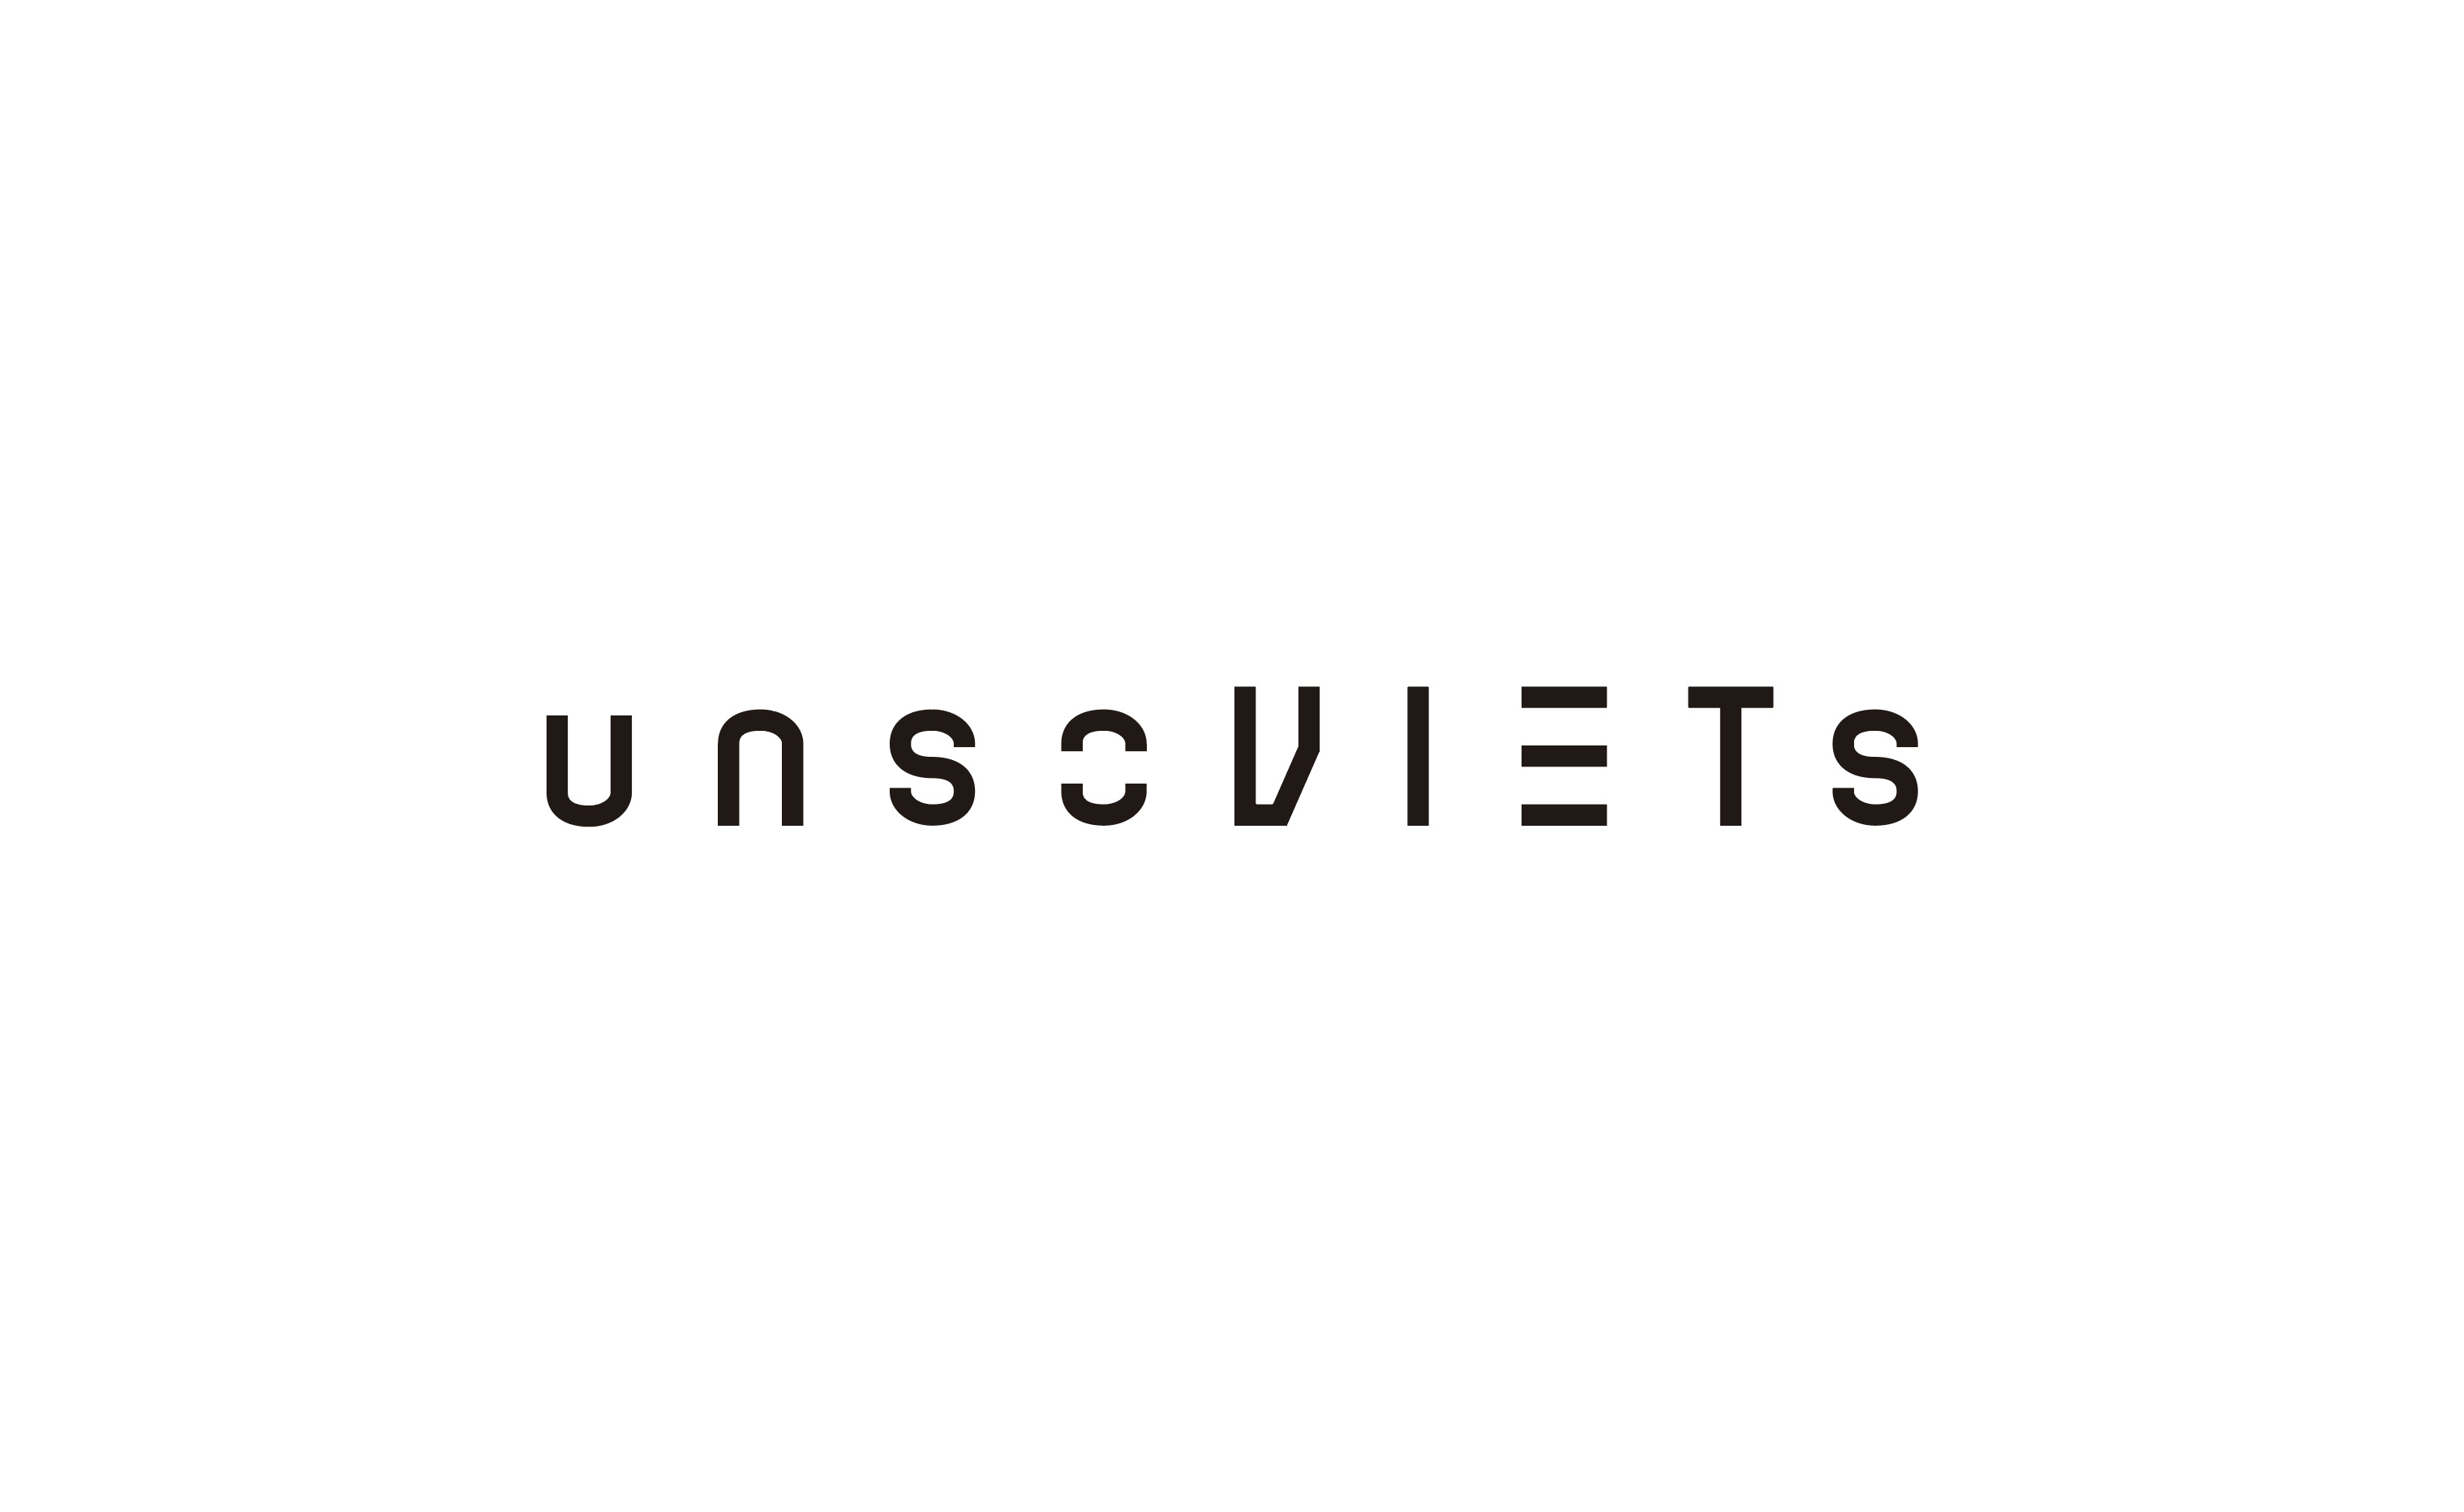 【6月13日20時発売】SOVIETS × UN PERFECT = UNSOVIETSをリリース!